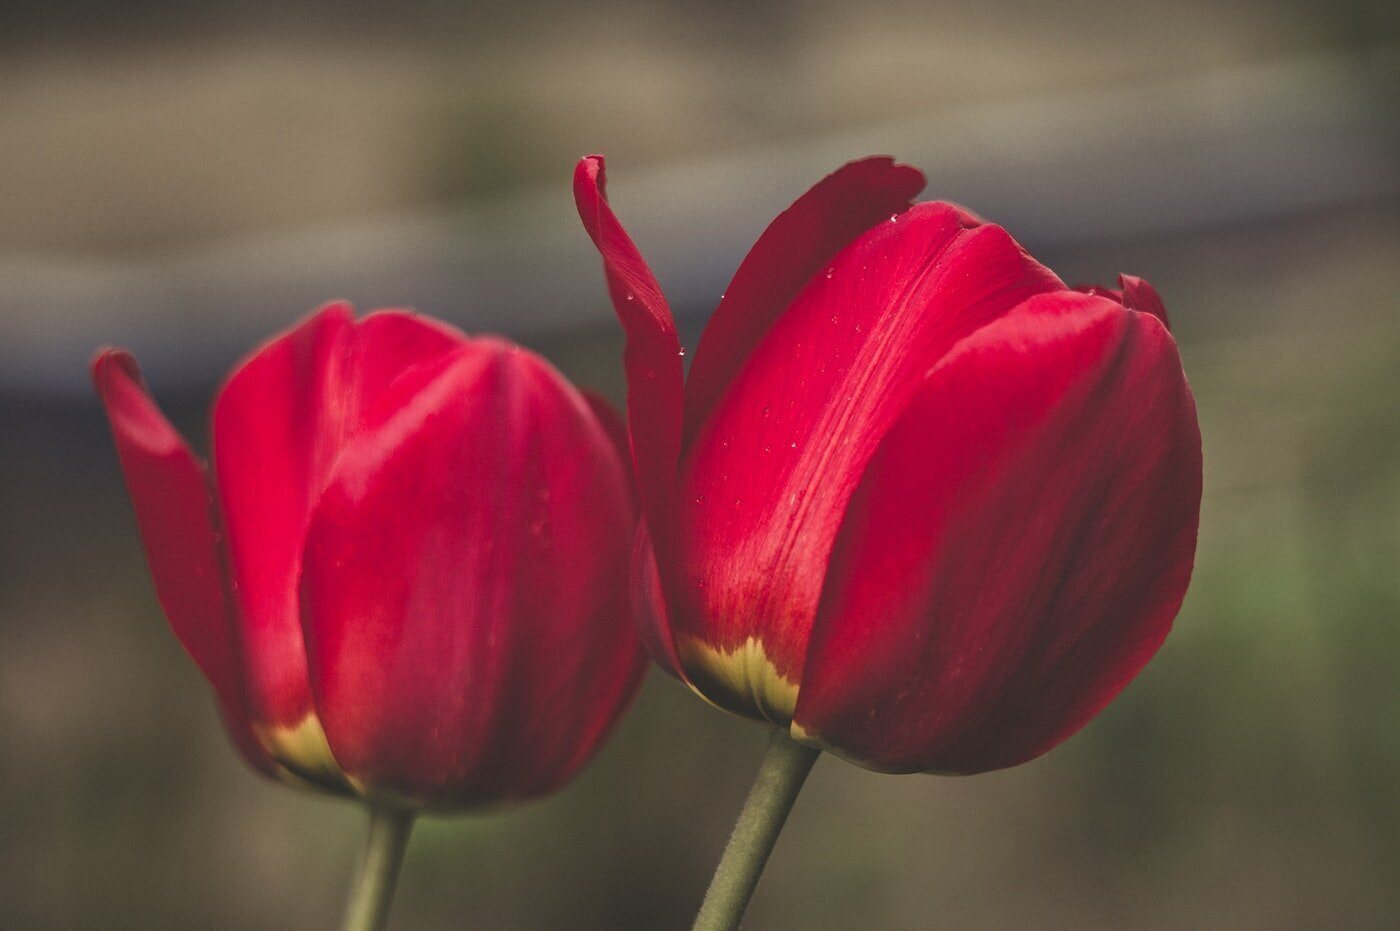 gros plan de deux tulipes rouges - signification et symbolisme des tulipes